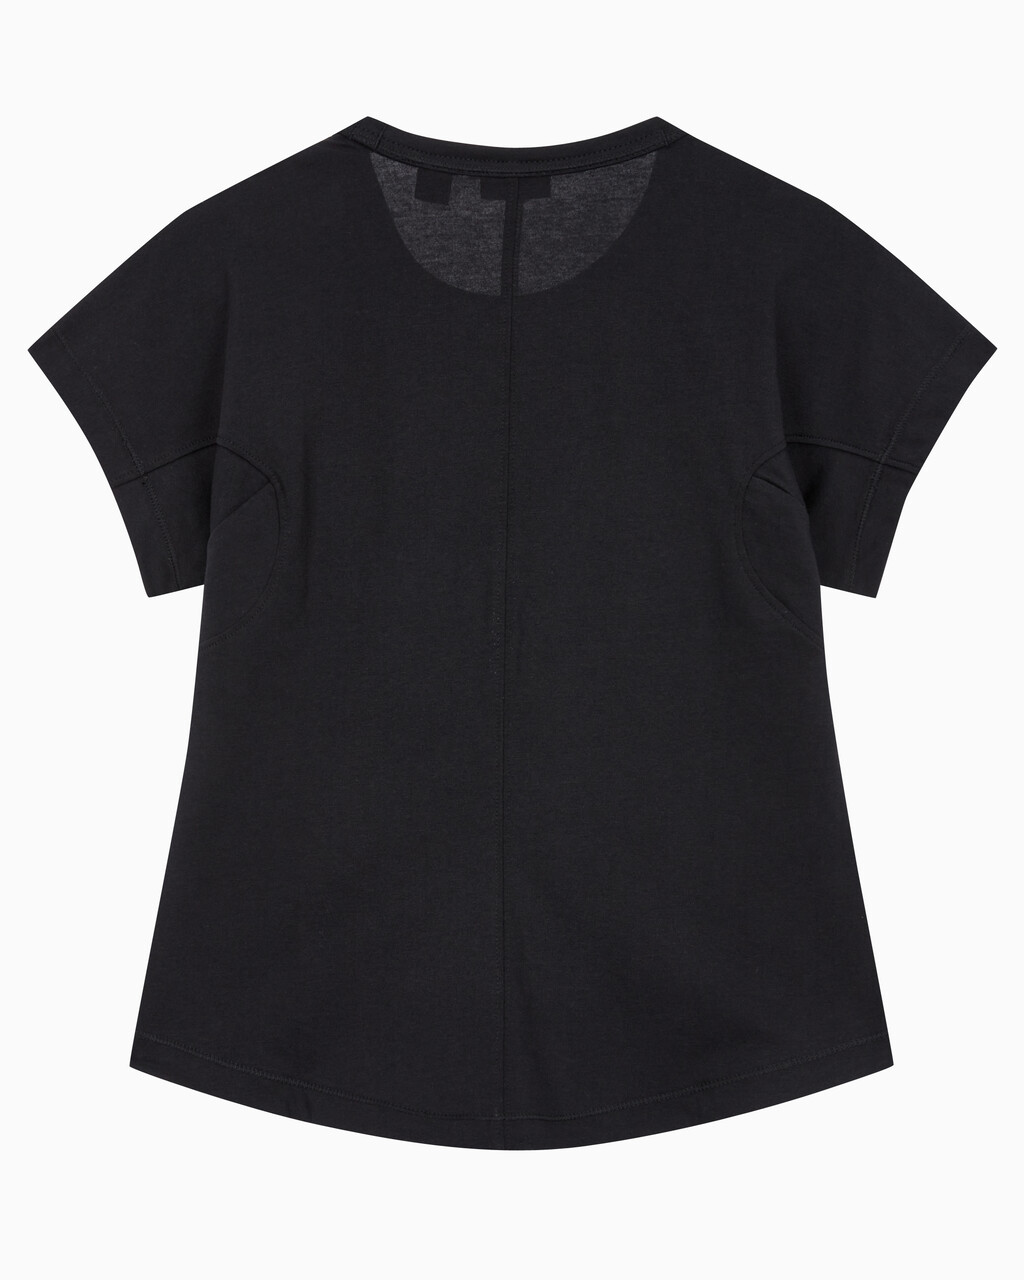 Buy 여성 슬림핏 숏 슬리브 티셔츠 in color BLACK